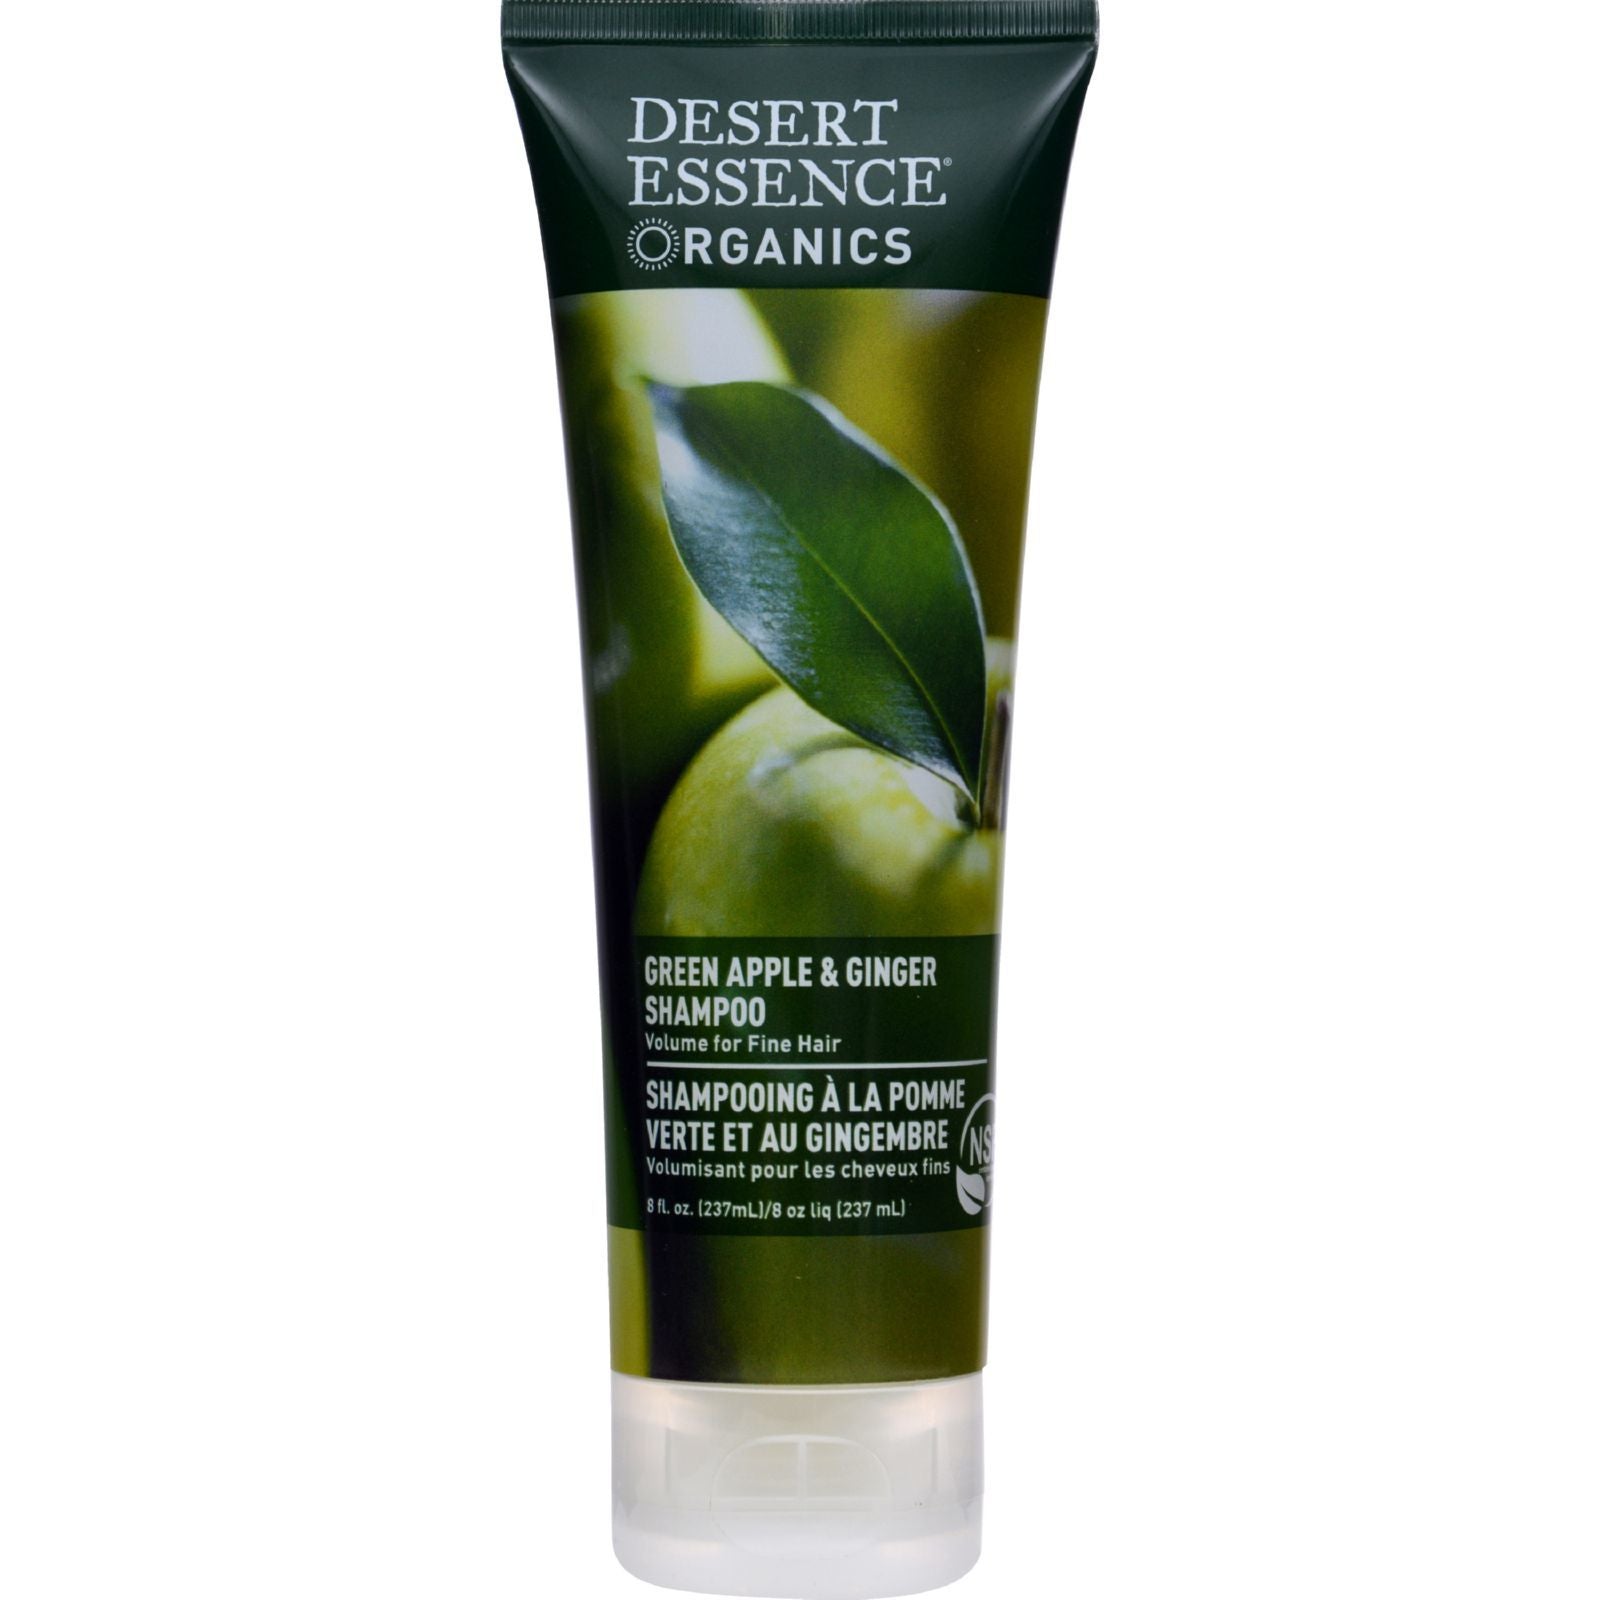 Desert Essence - Shampoo Green Apple and Ginger - 8 fl oz